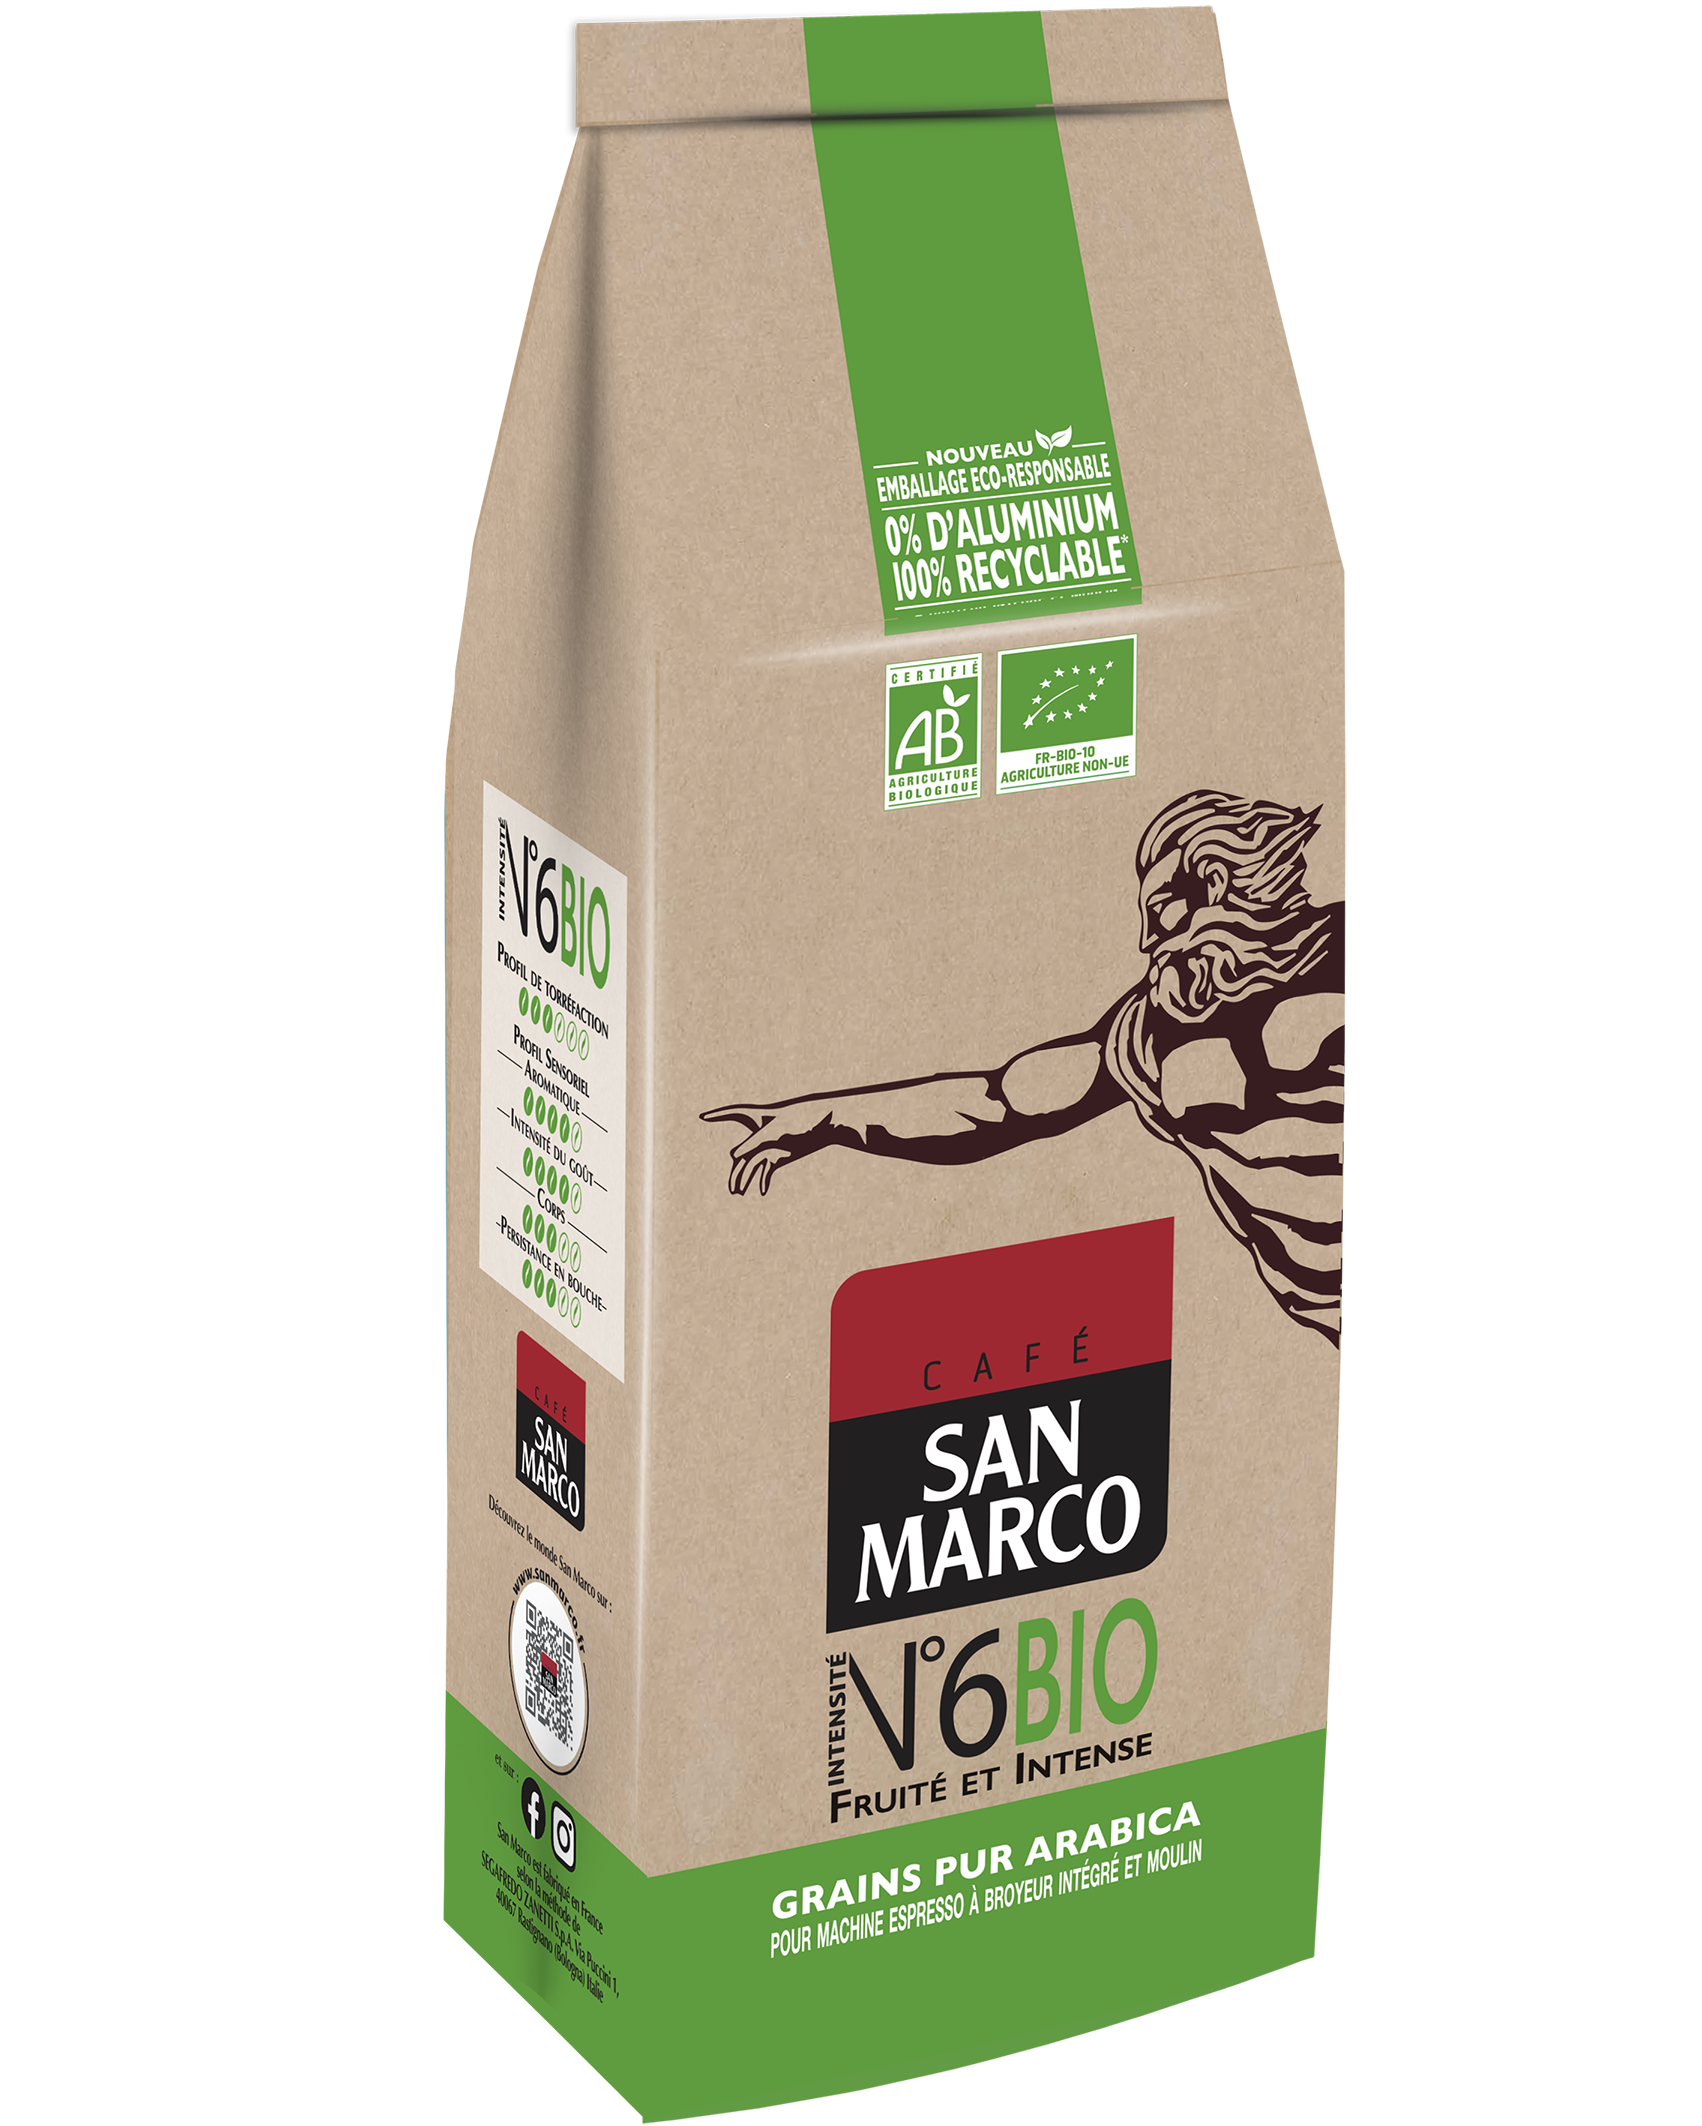 Nos cafés - Grains - San Marco grains - Café San Marco